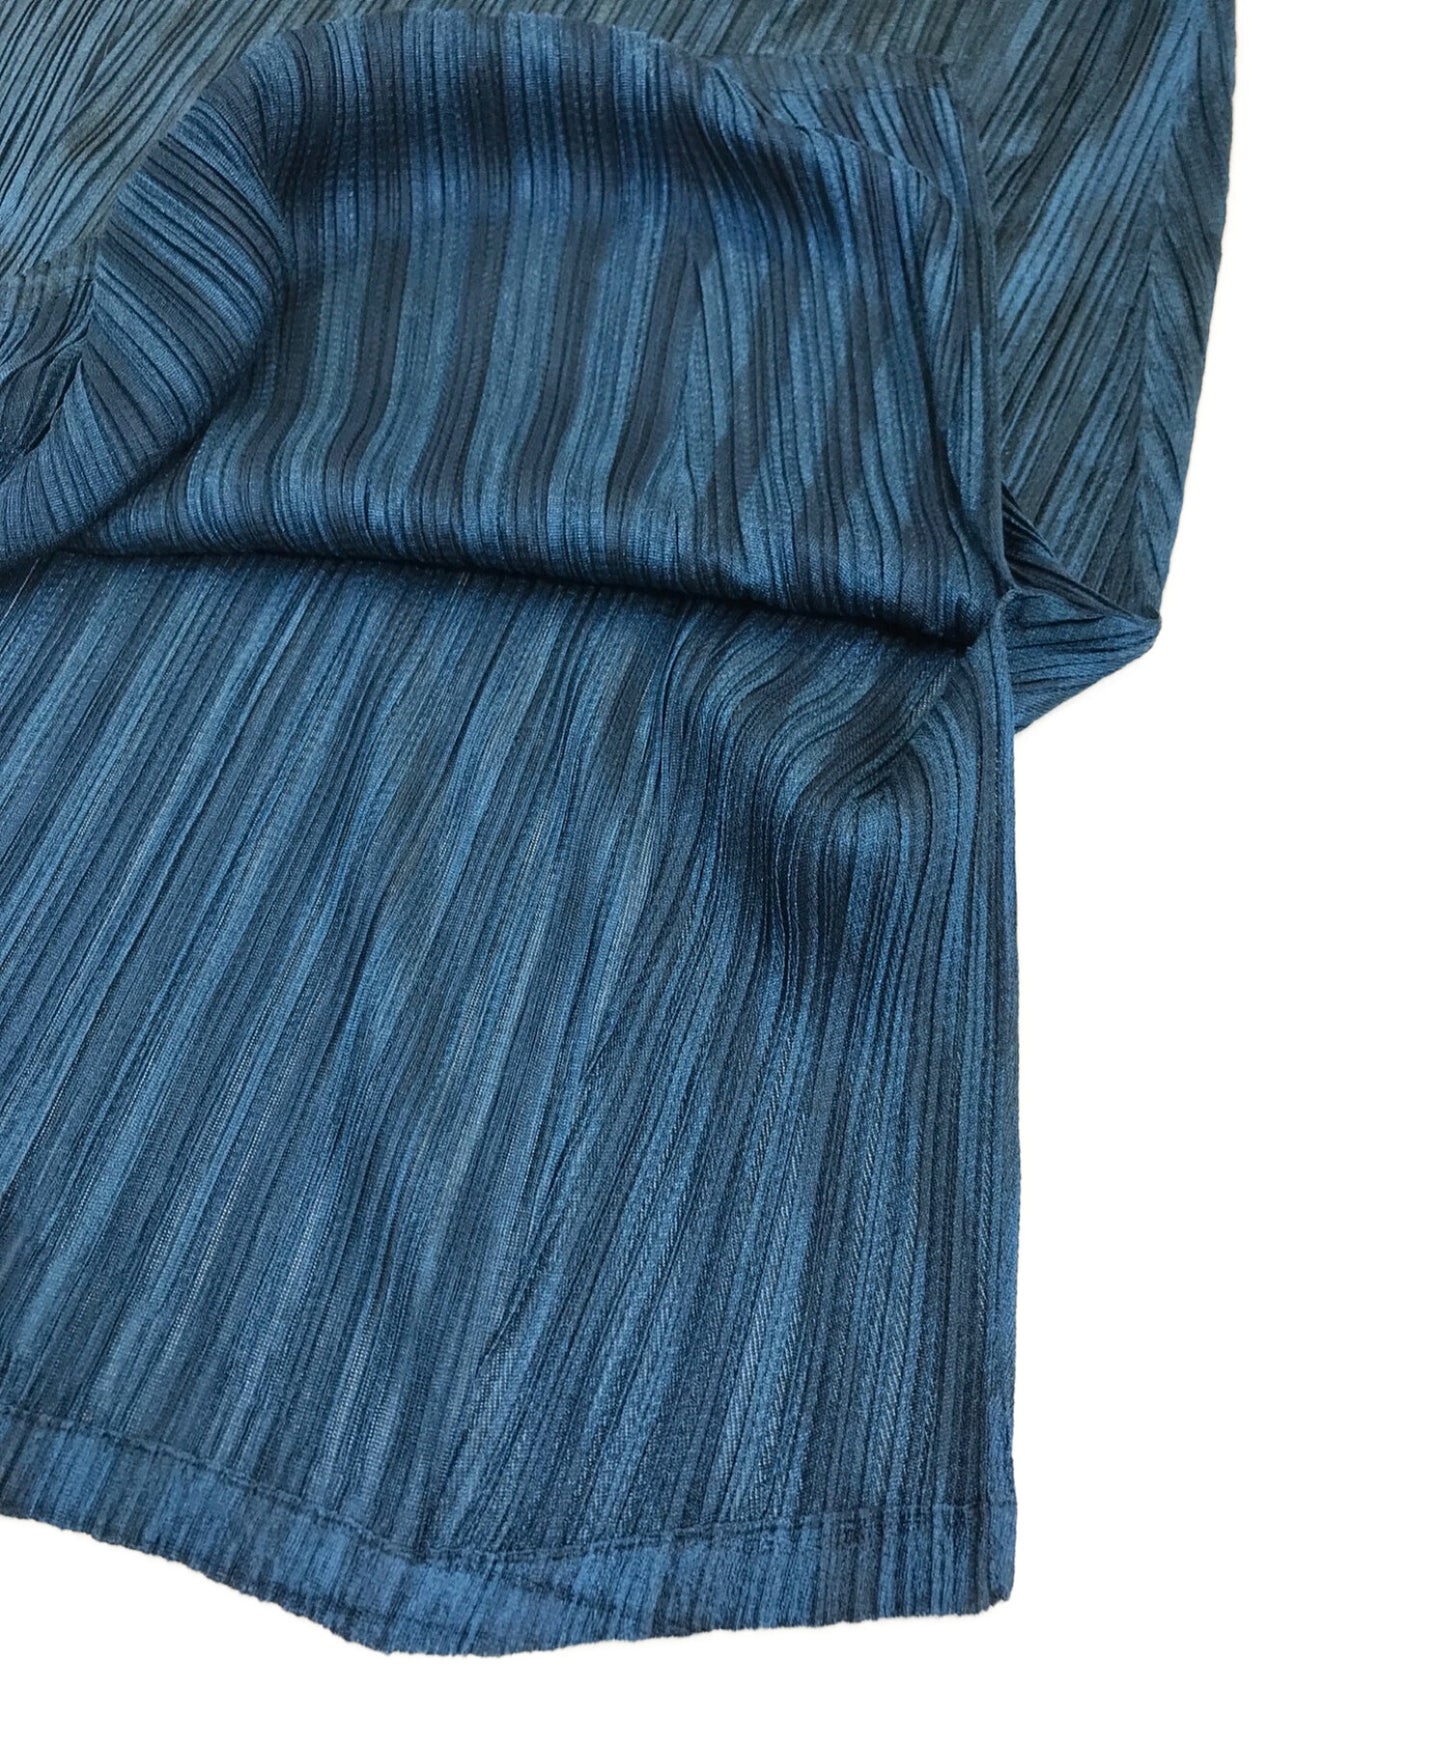 褶皱请纯粹的侧缝迷你连衣裙PP73-JT622